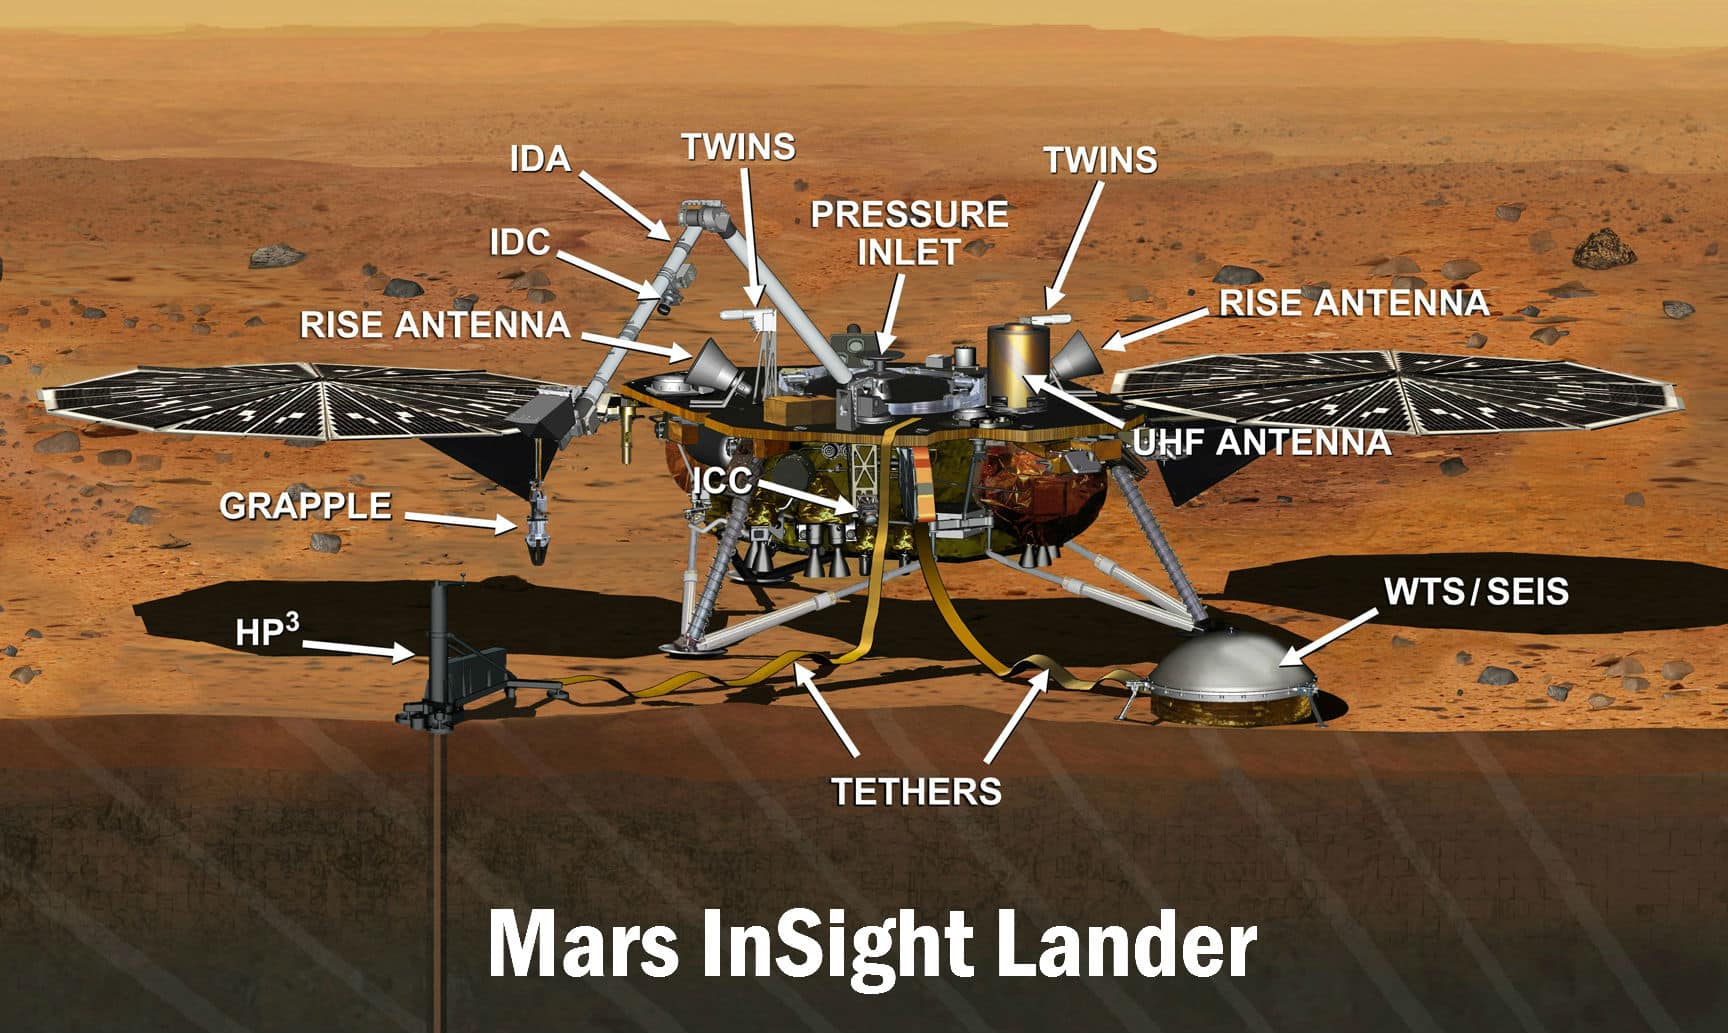 ¿Hay vida en Marte? en 2018 lo descubriremos